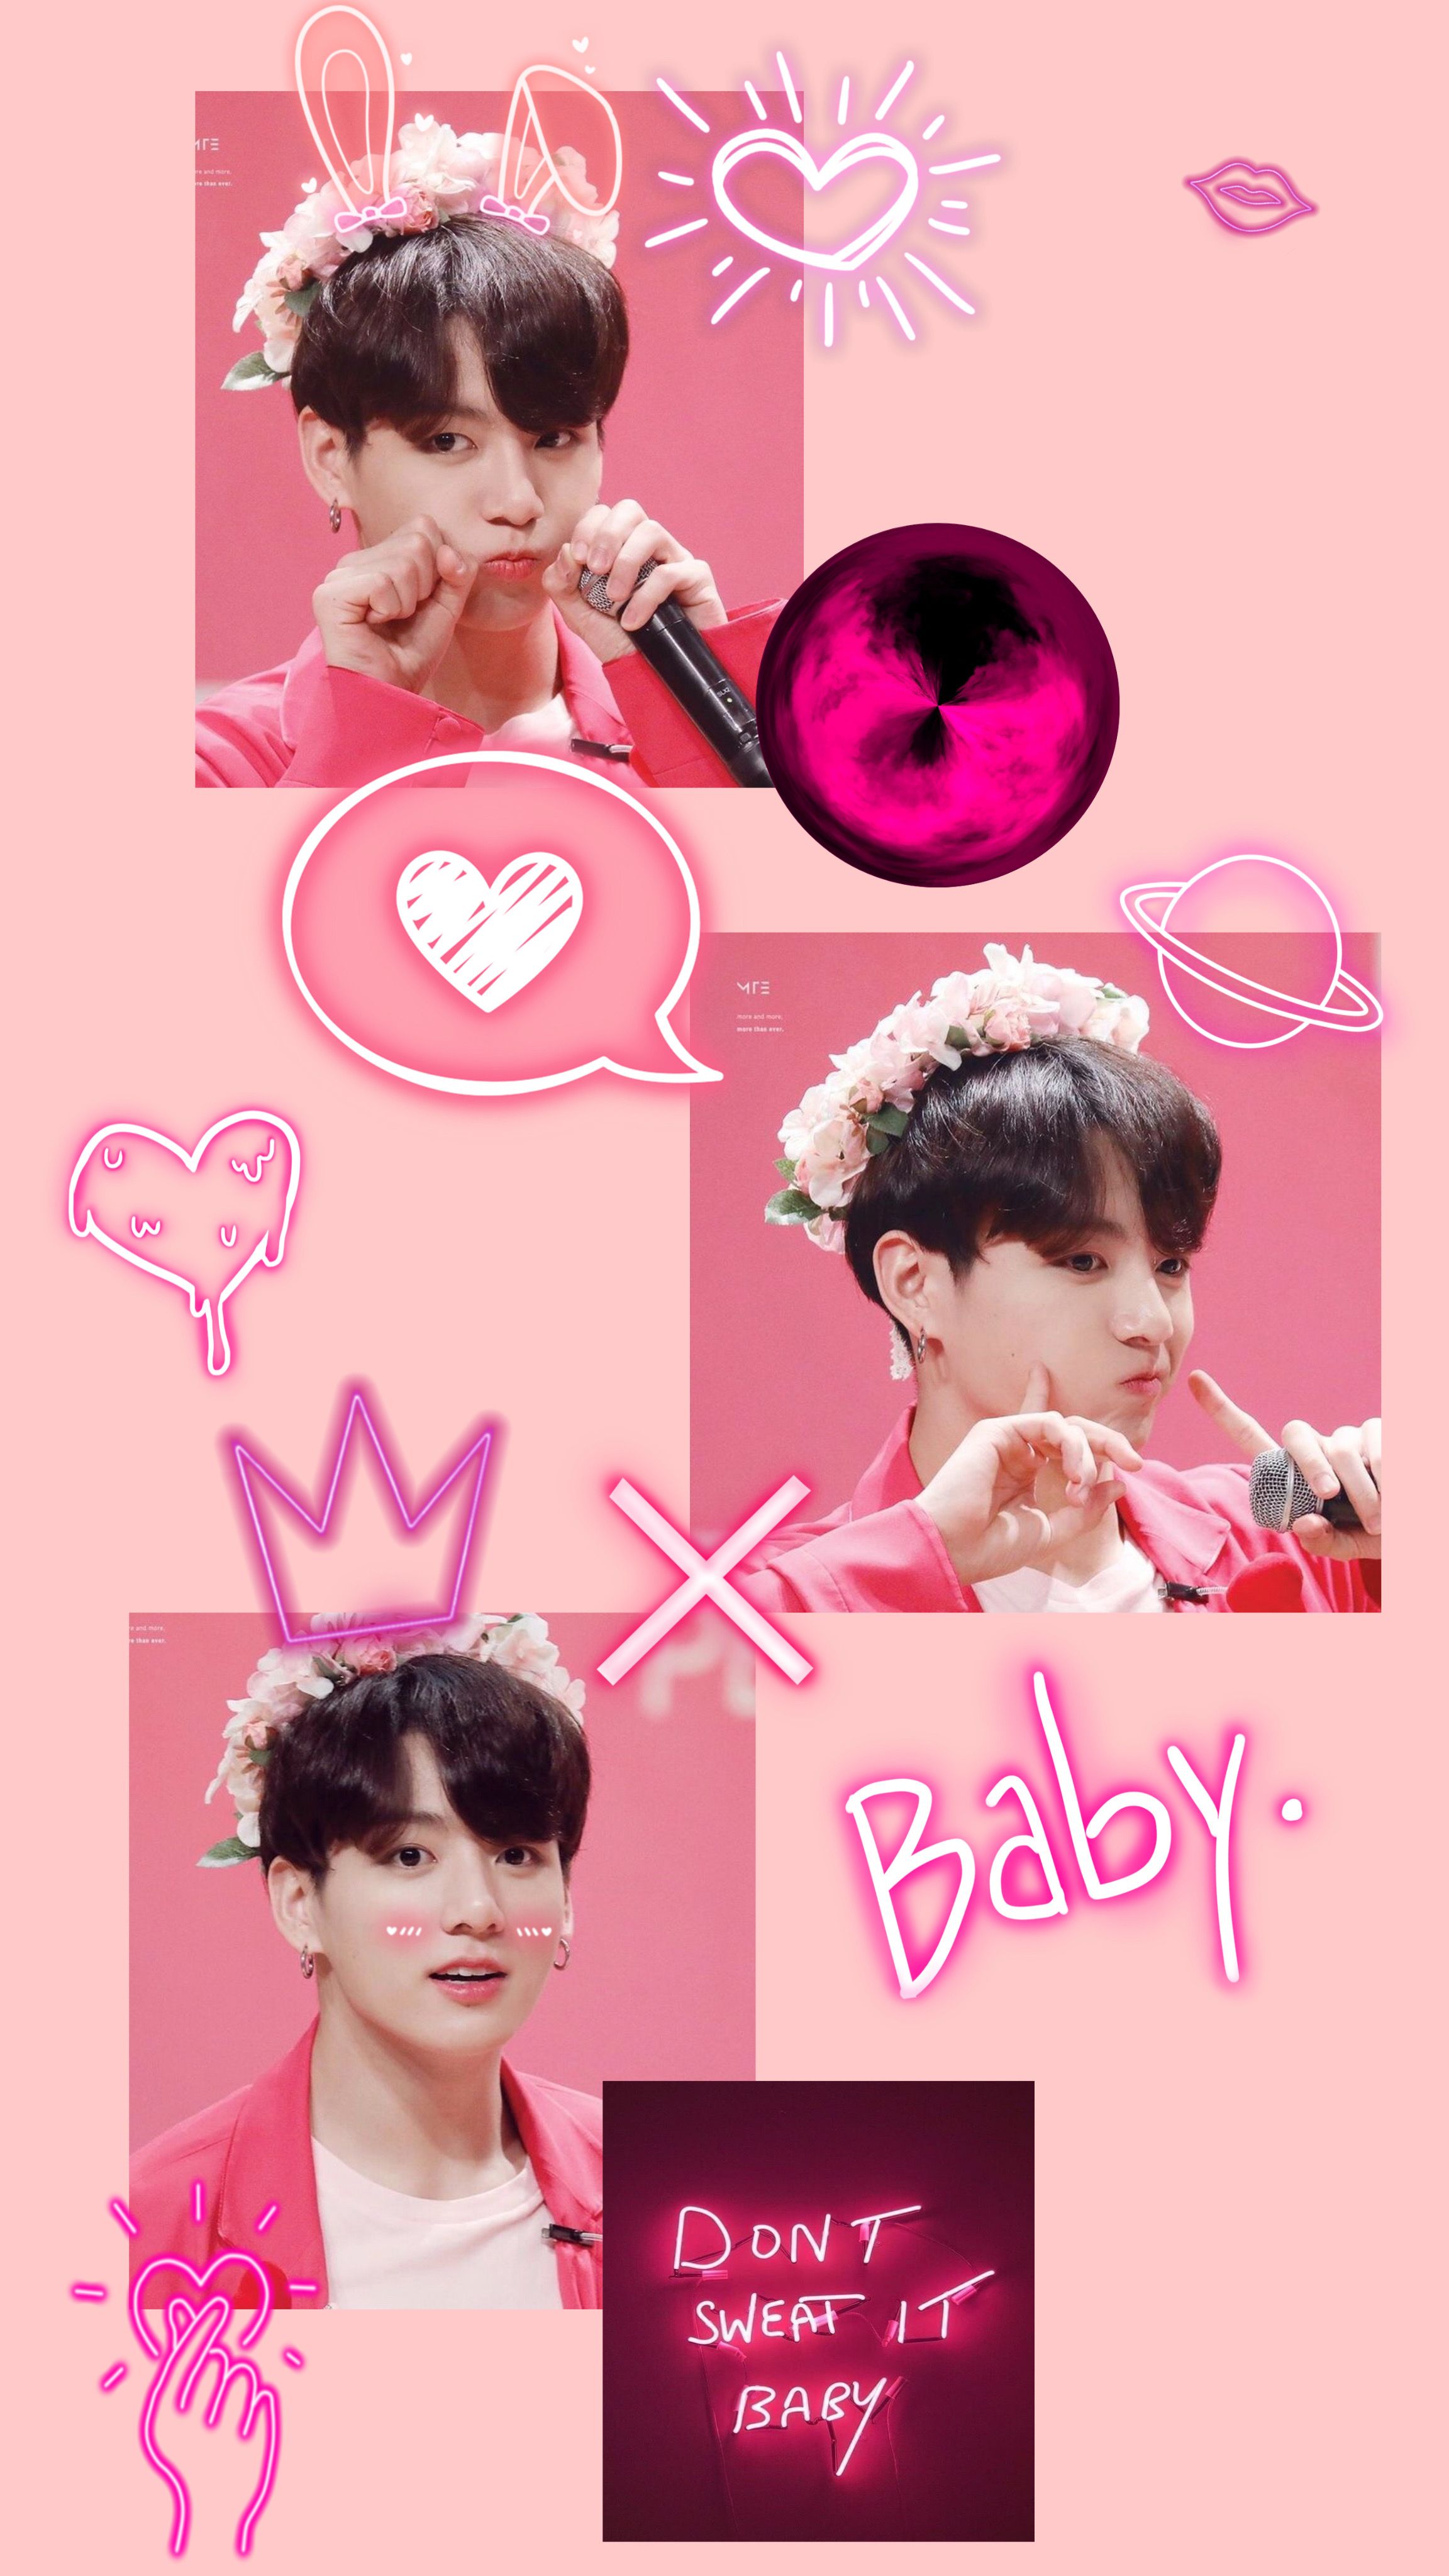 Aesthetic pink jungkook wallpaper. Bts jungkook birthday, Jungkook aesthetic, Jungkook cute